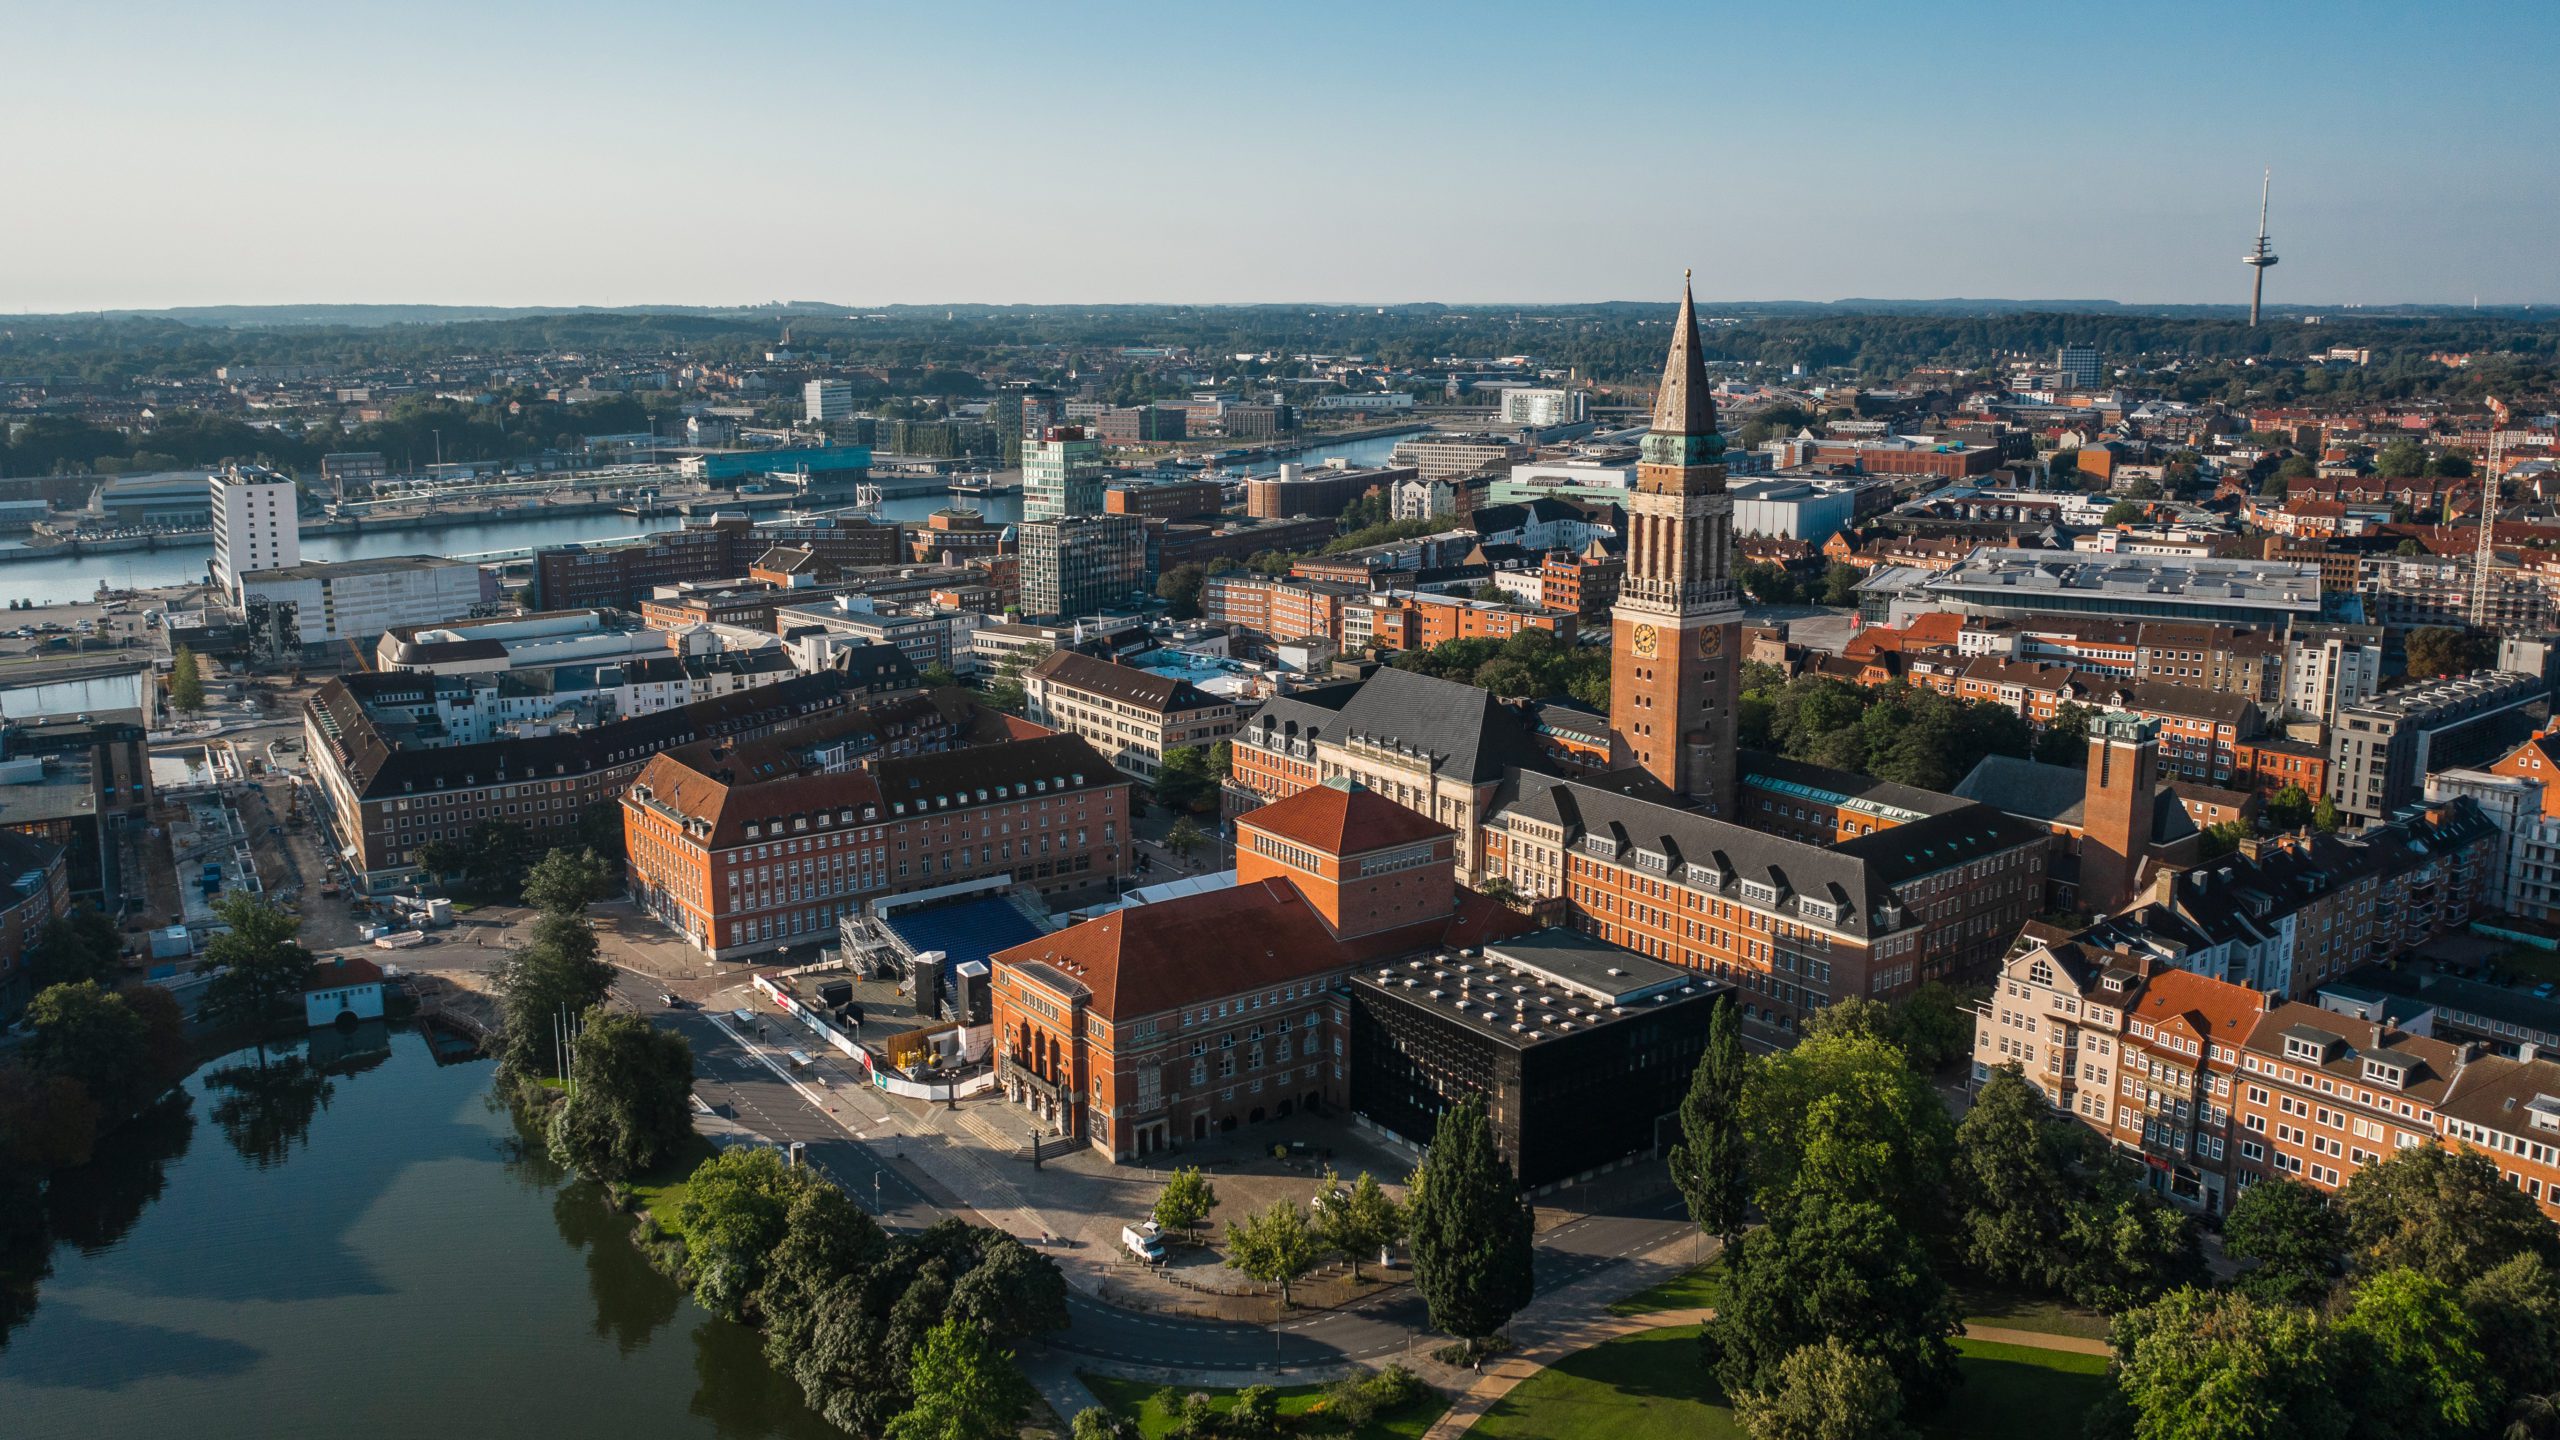 Genieße den Charme der Kieler Innenstadt, mit Blick aufs Meer und der sanften Brise im Gesicht. Die Landeshauptstadt bietet neben vielen wunderschönen Gebäuden und Naturflächen, den Zugang zu der Ostsee und all ihren Vorzügen.